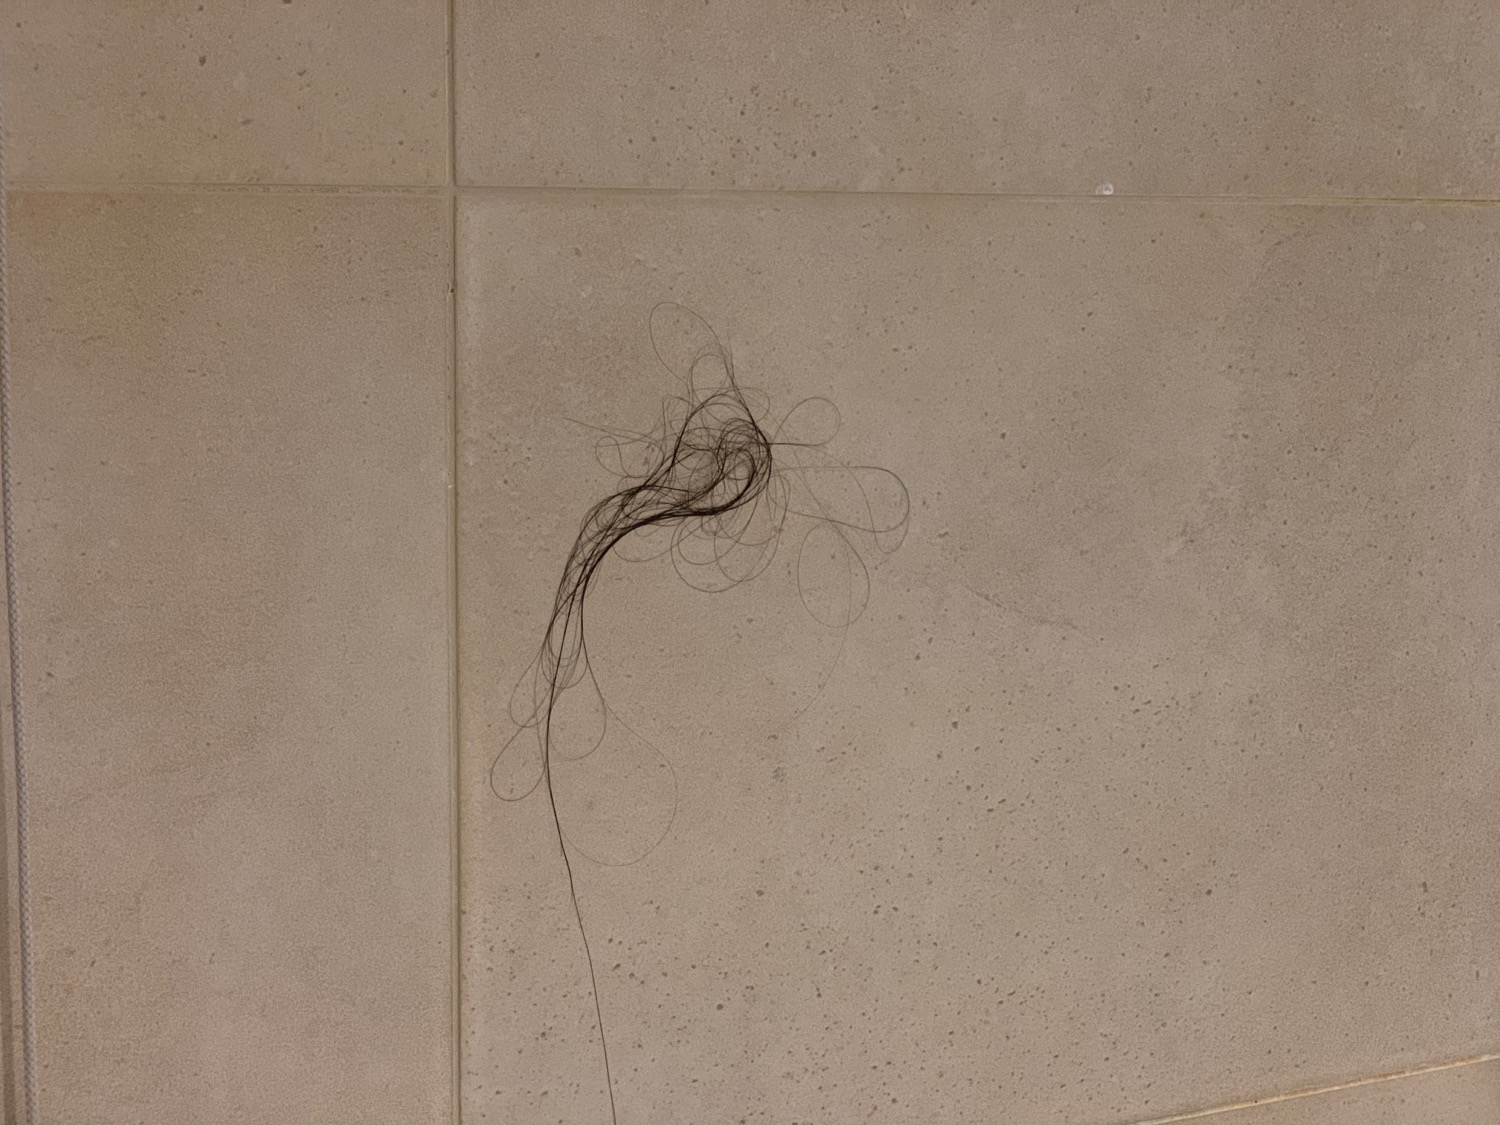 a hair on the floor